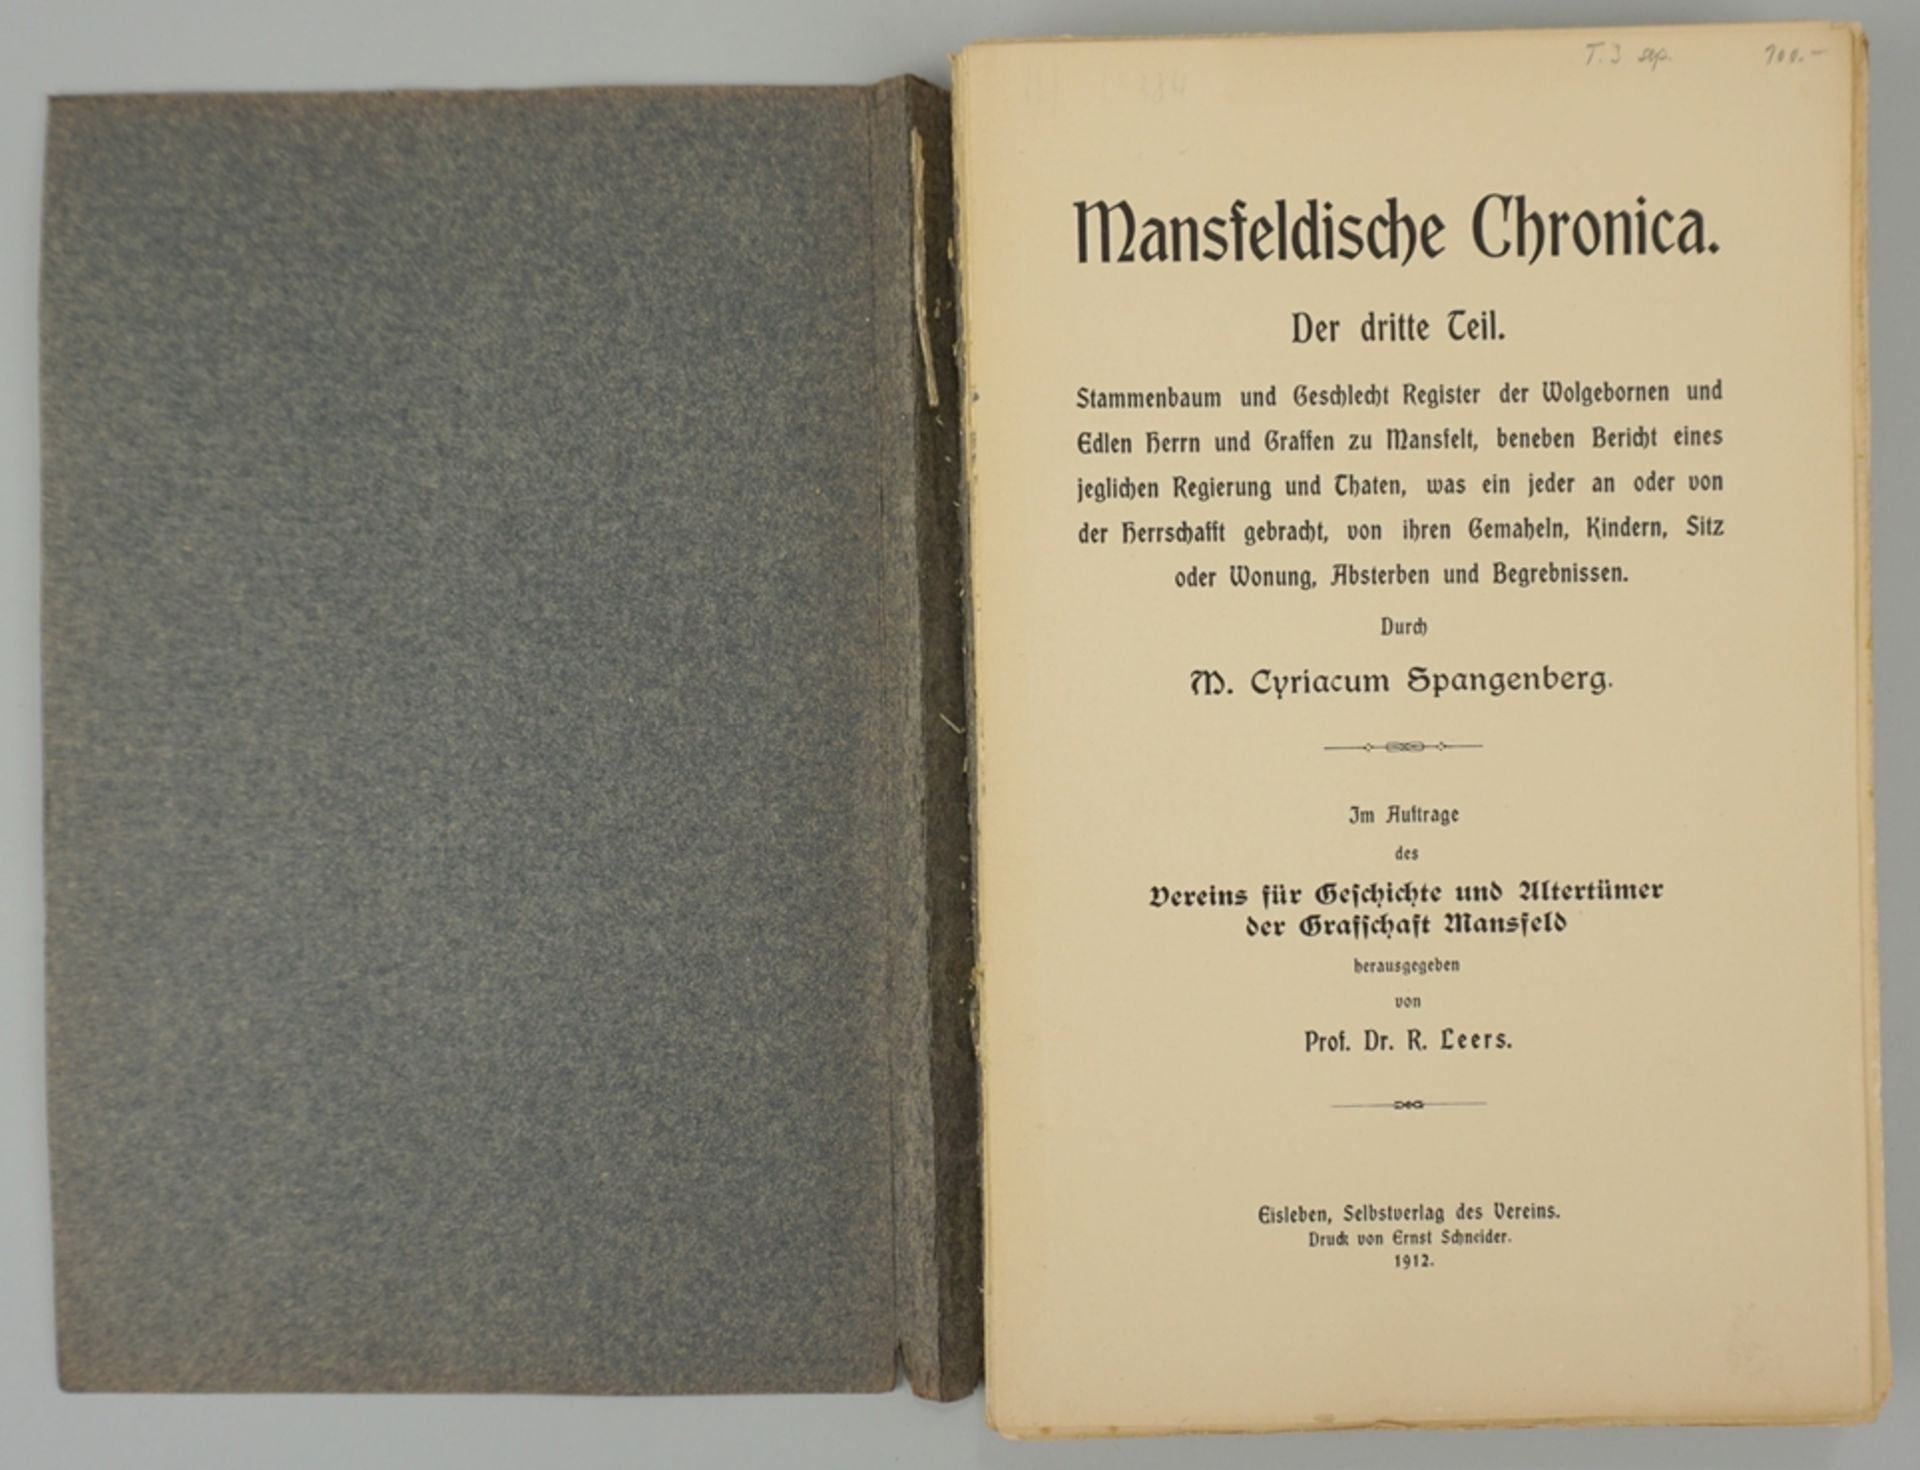 Mansfeldische Chronica. Der dritte Teil, M.Cyriacum Spangenberg, 1912 - Bild 2 aus 2